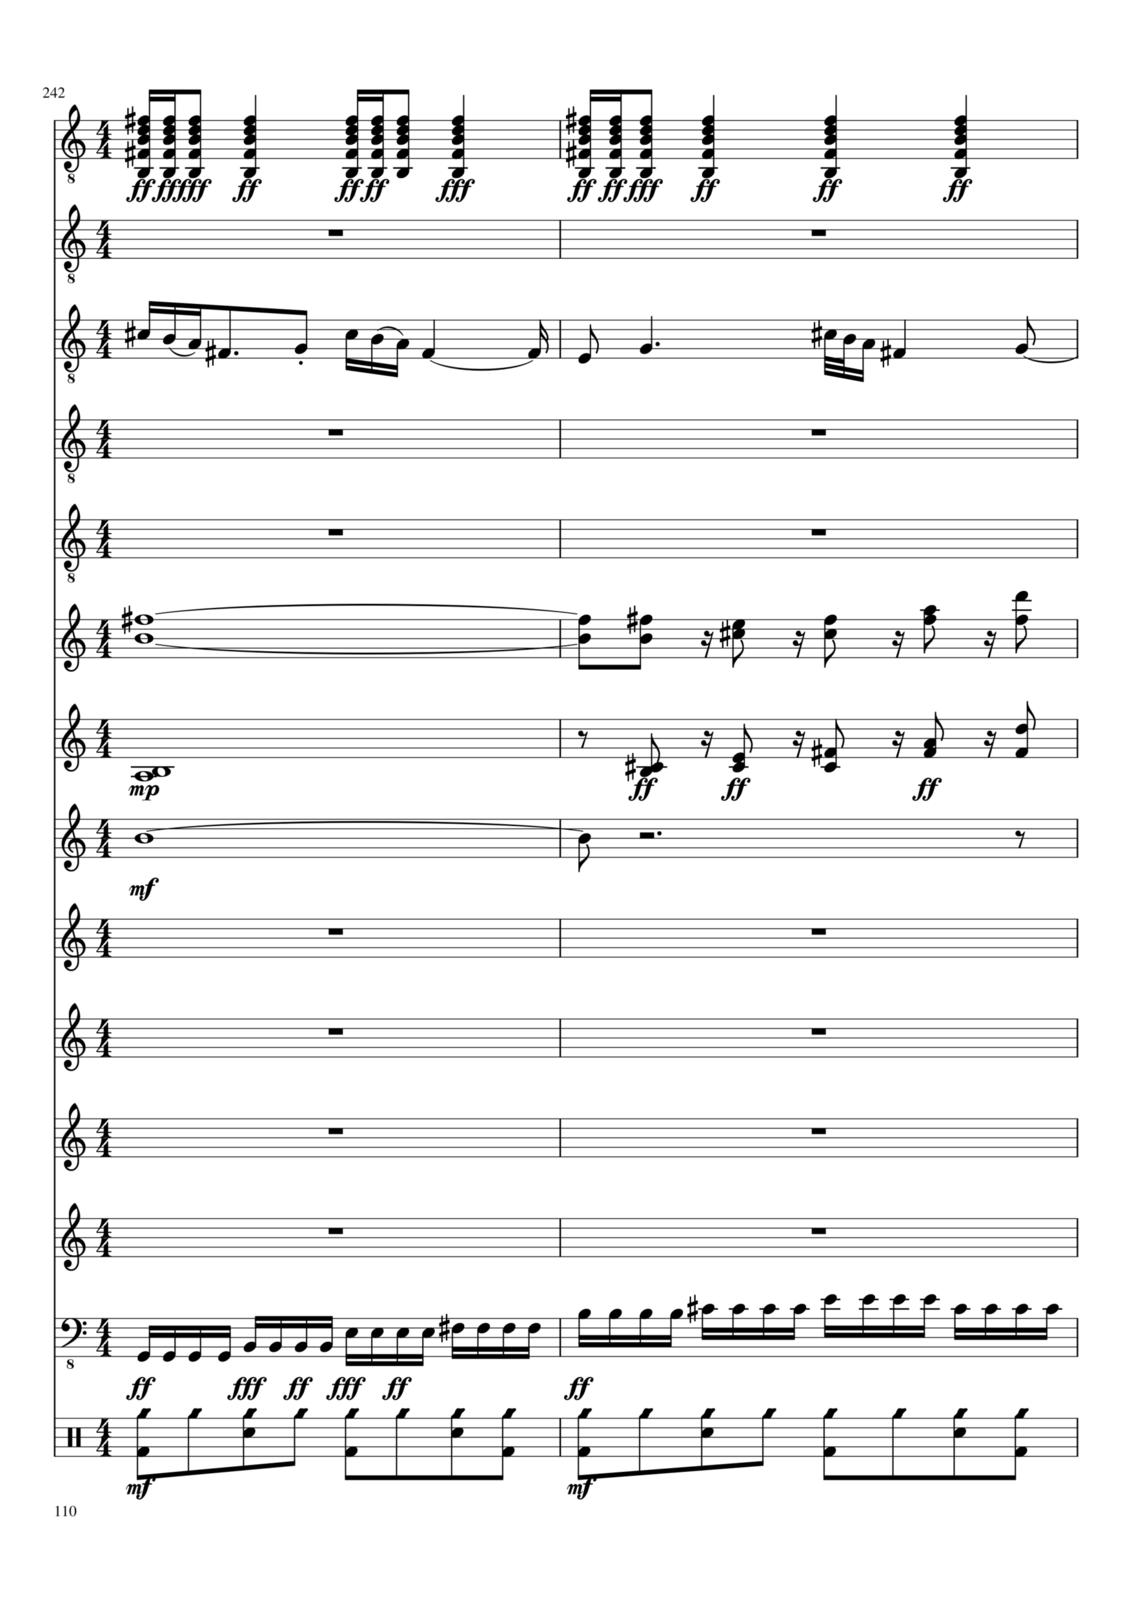 Vechnaya prizrachnaya vstrechnaya slide, Image 6